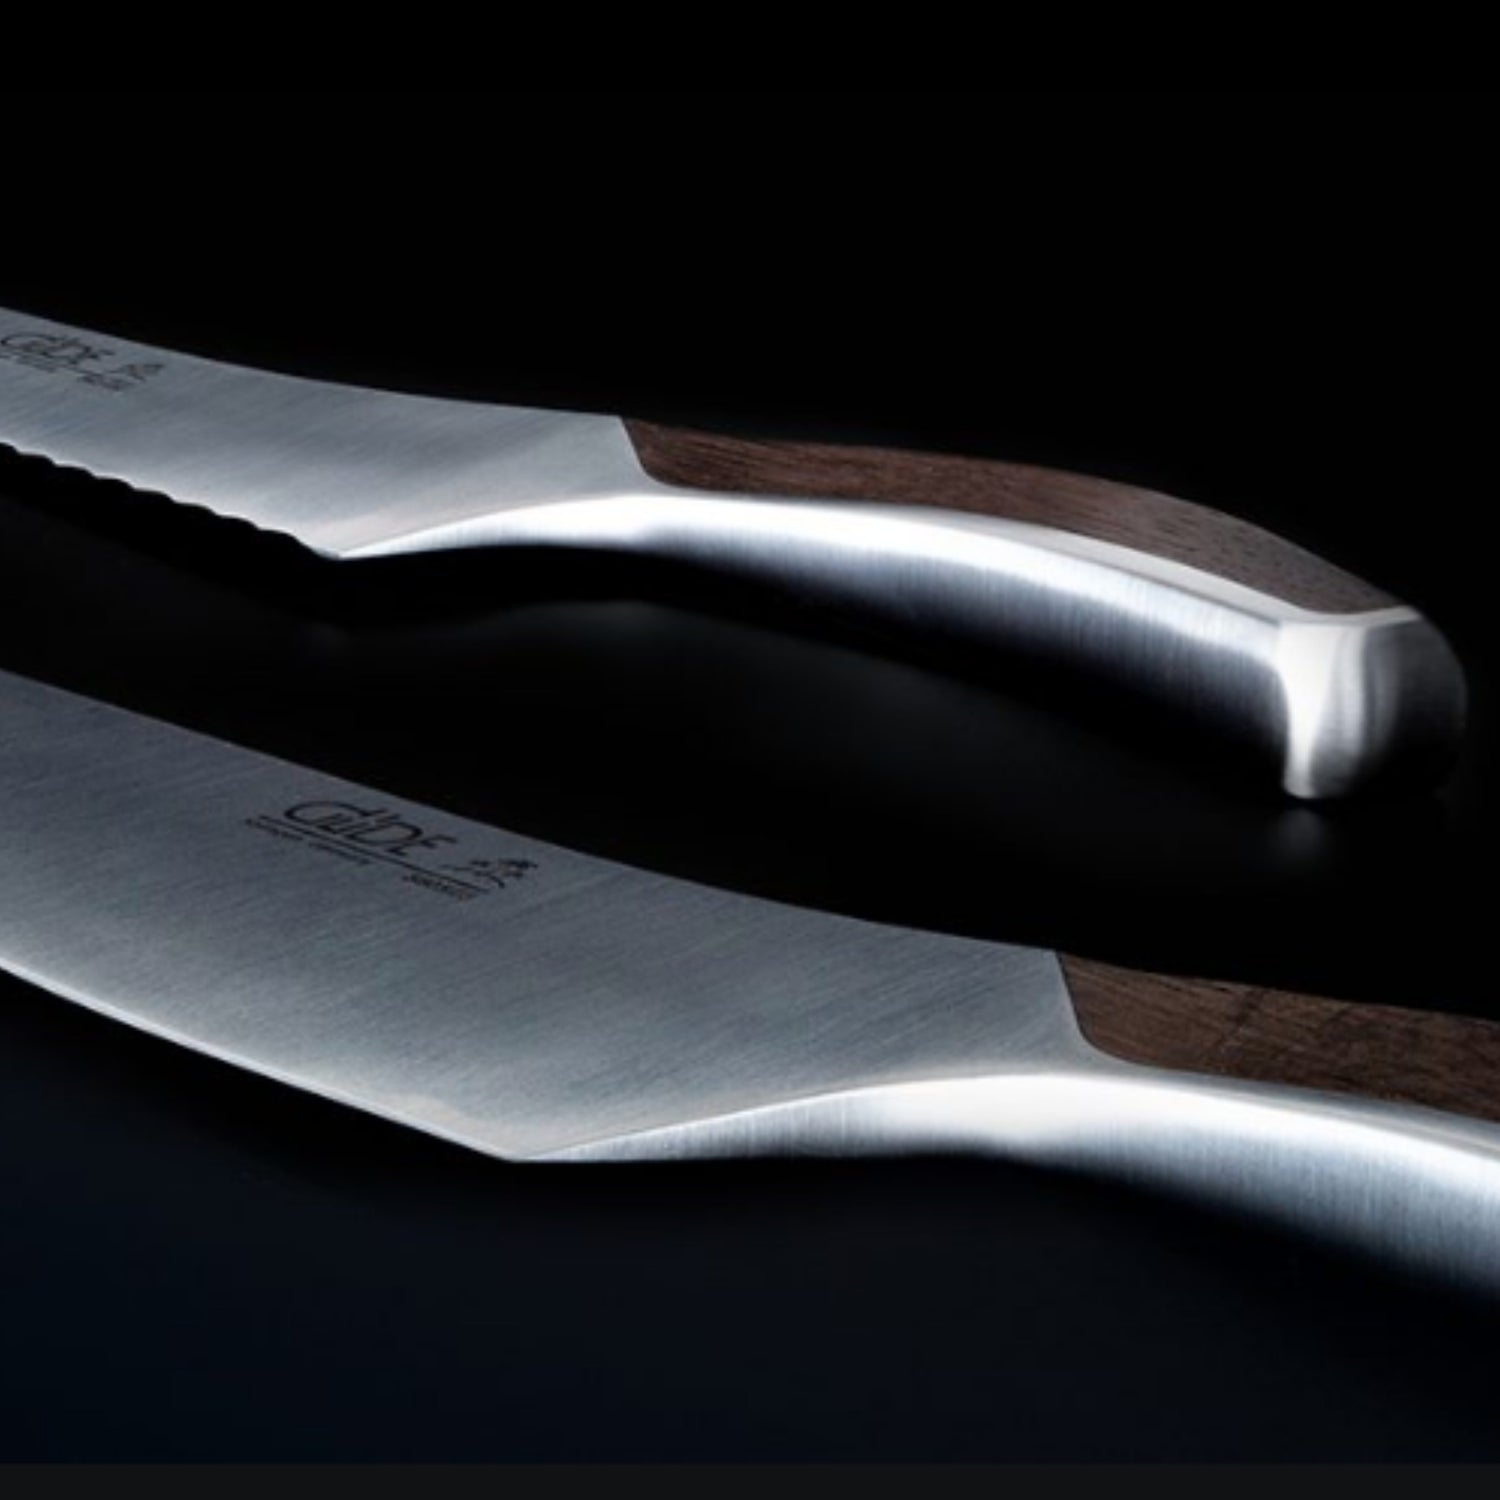 GÜDE  THE KNIFE. 🔪 L'extension naturelle de la main